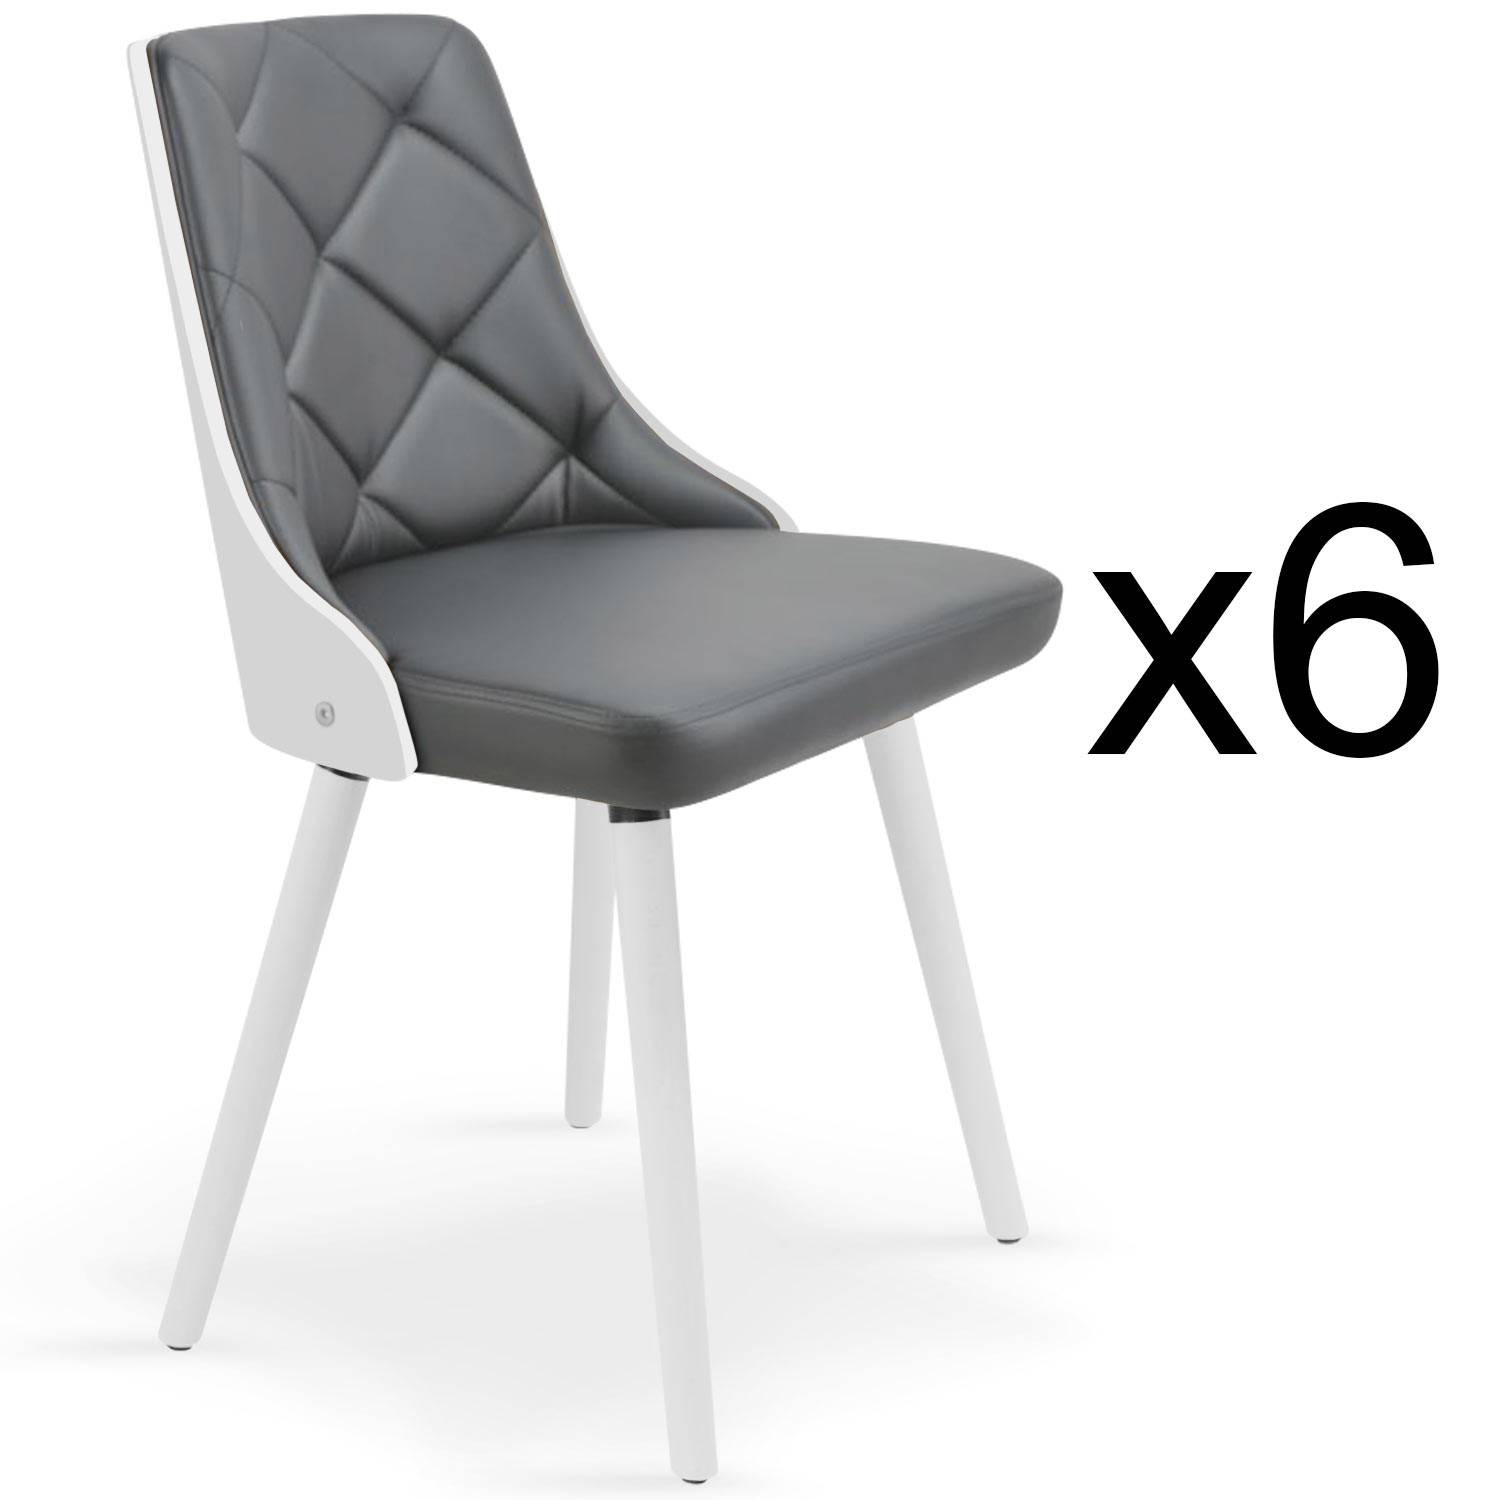 Lote de 6 sillas escandinavas Lalix, blancas y grises